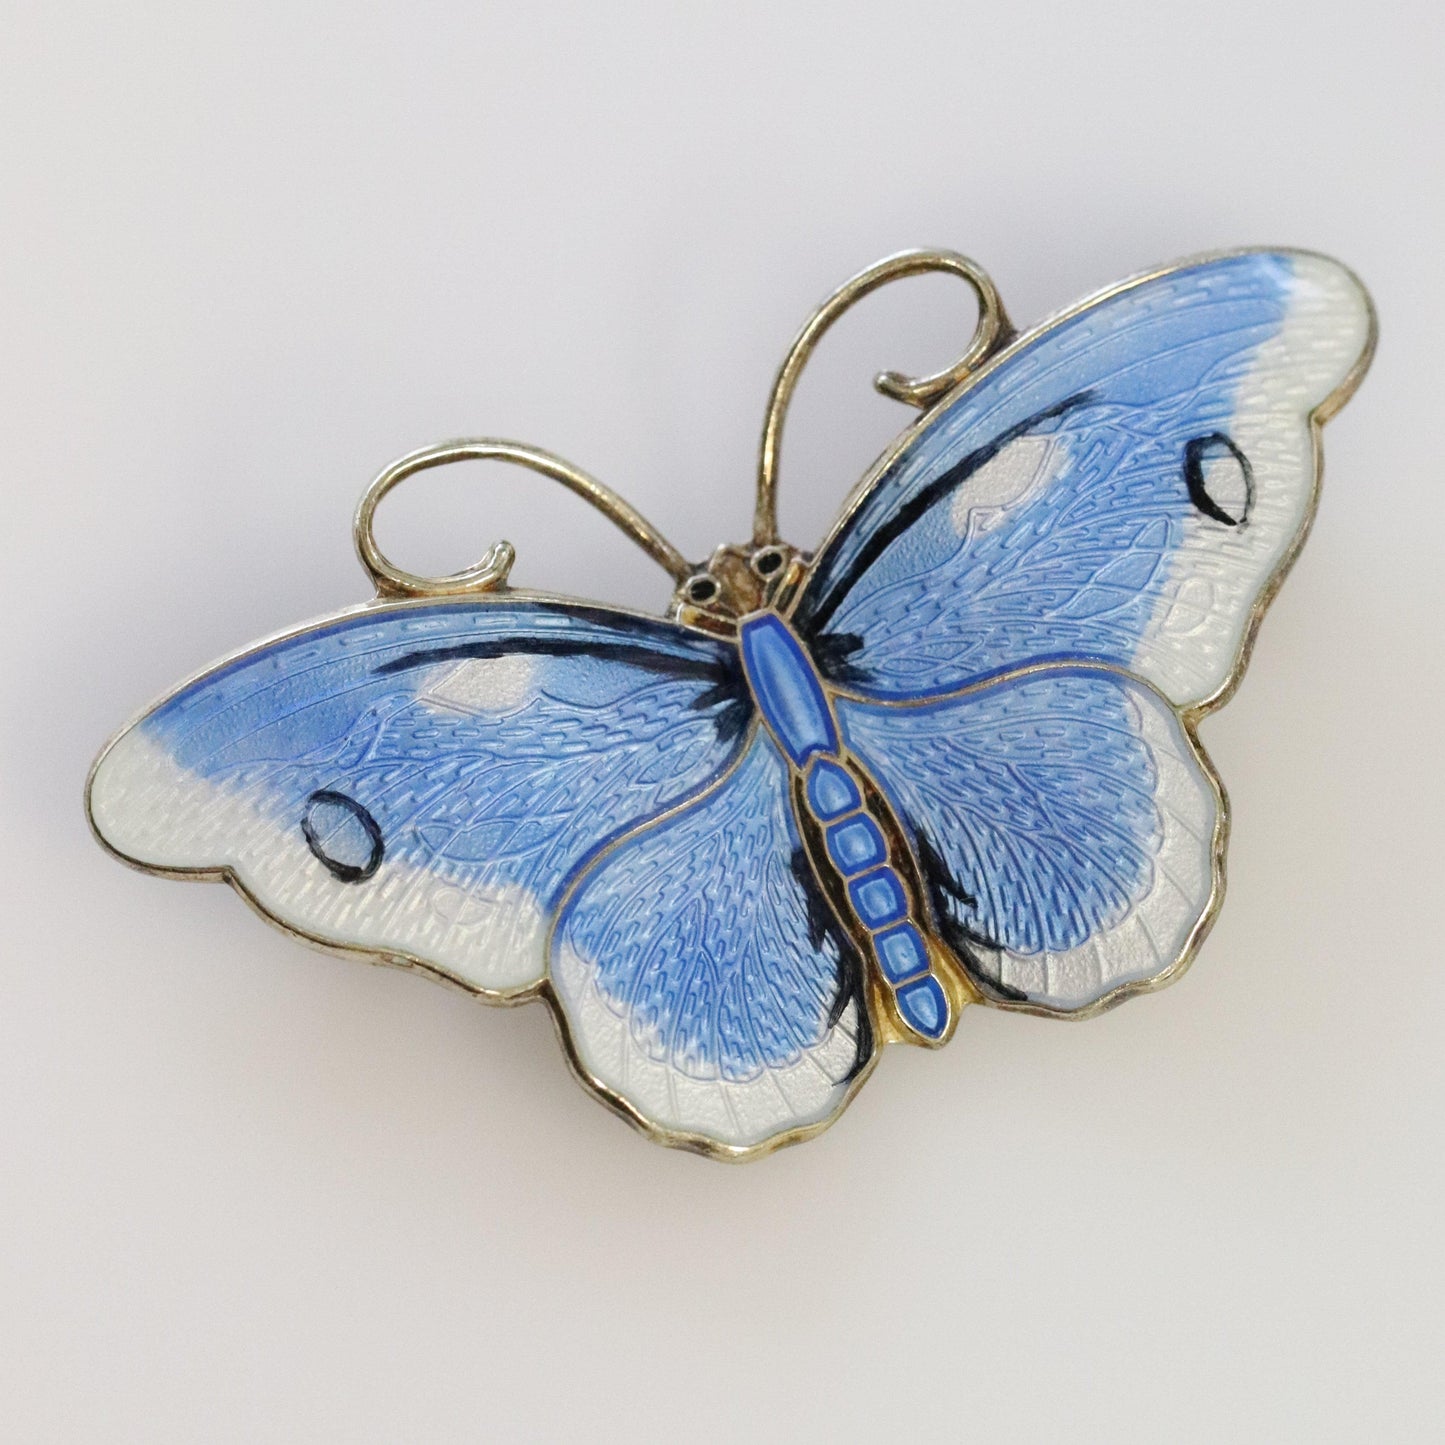 Vintage Hroar Prydz Enamel Jewelry | Blue and White Guilloche Enamel Butterfly Brooch - Carmel Fine Silver Jewelry